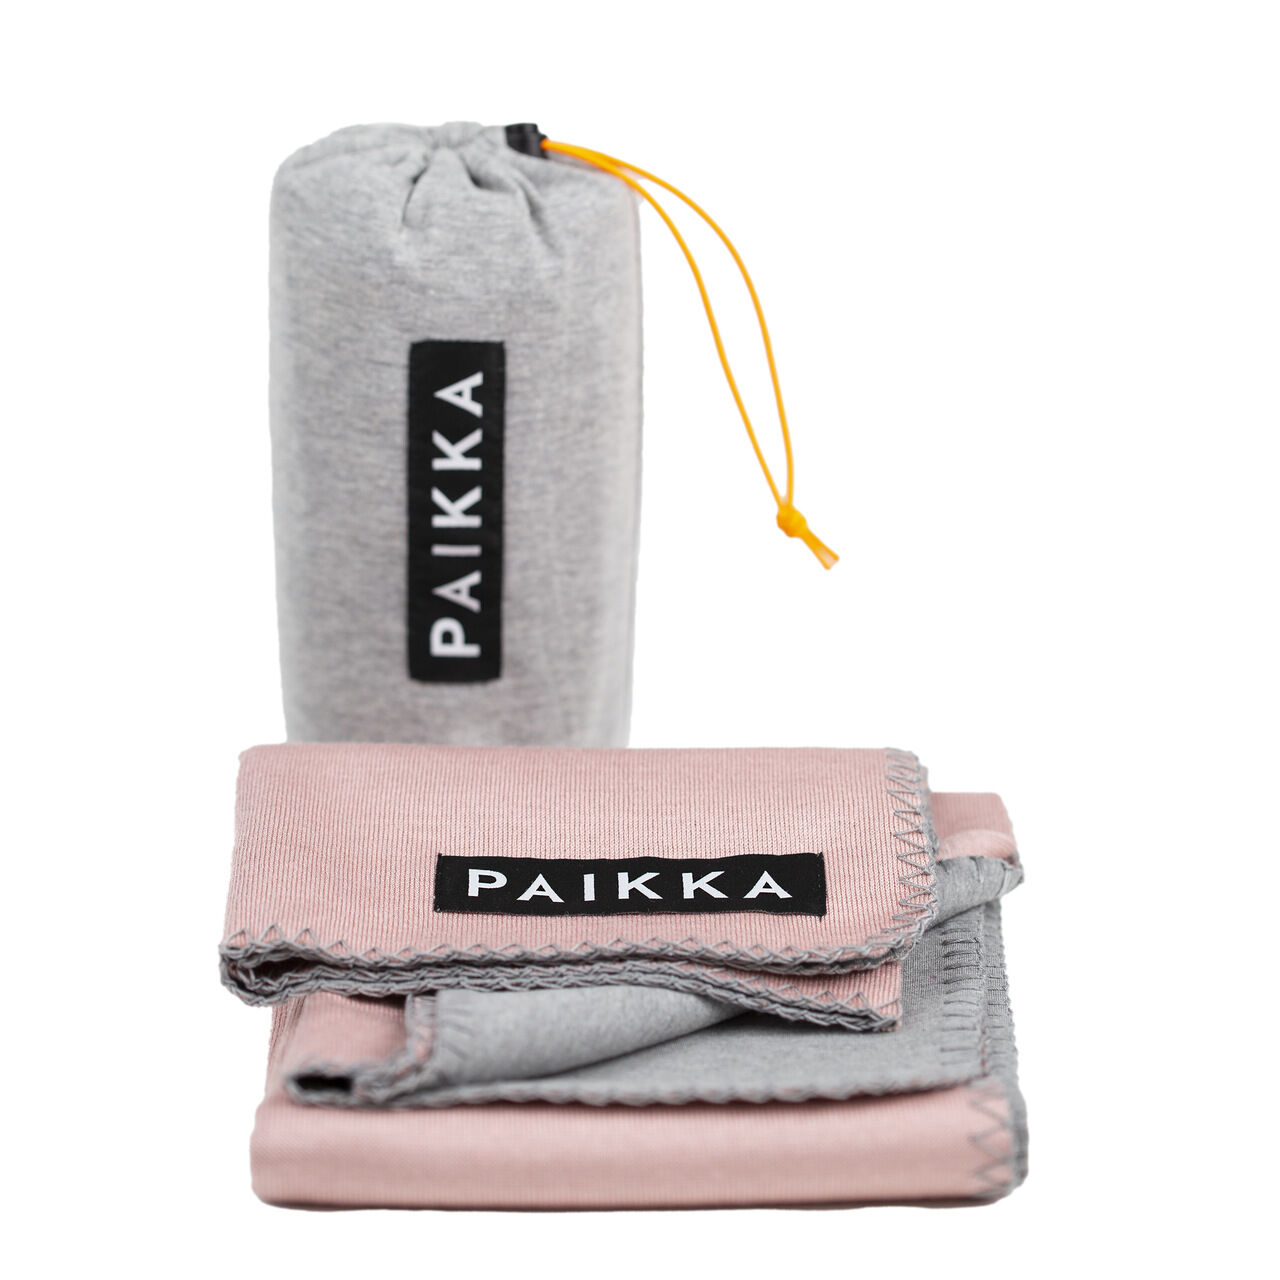 PAIKKA-Recovery-Blanket-waermende-Haustierdecke-Image1-60-46135